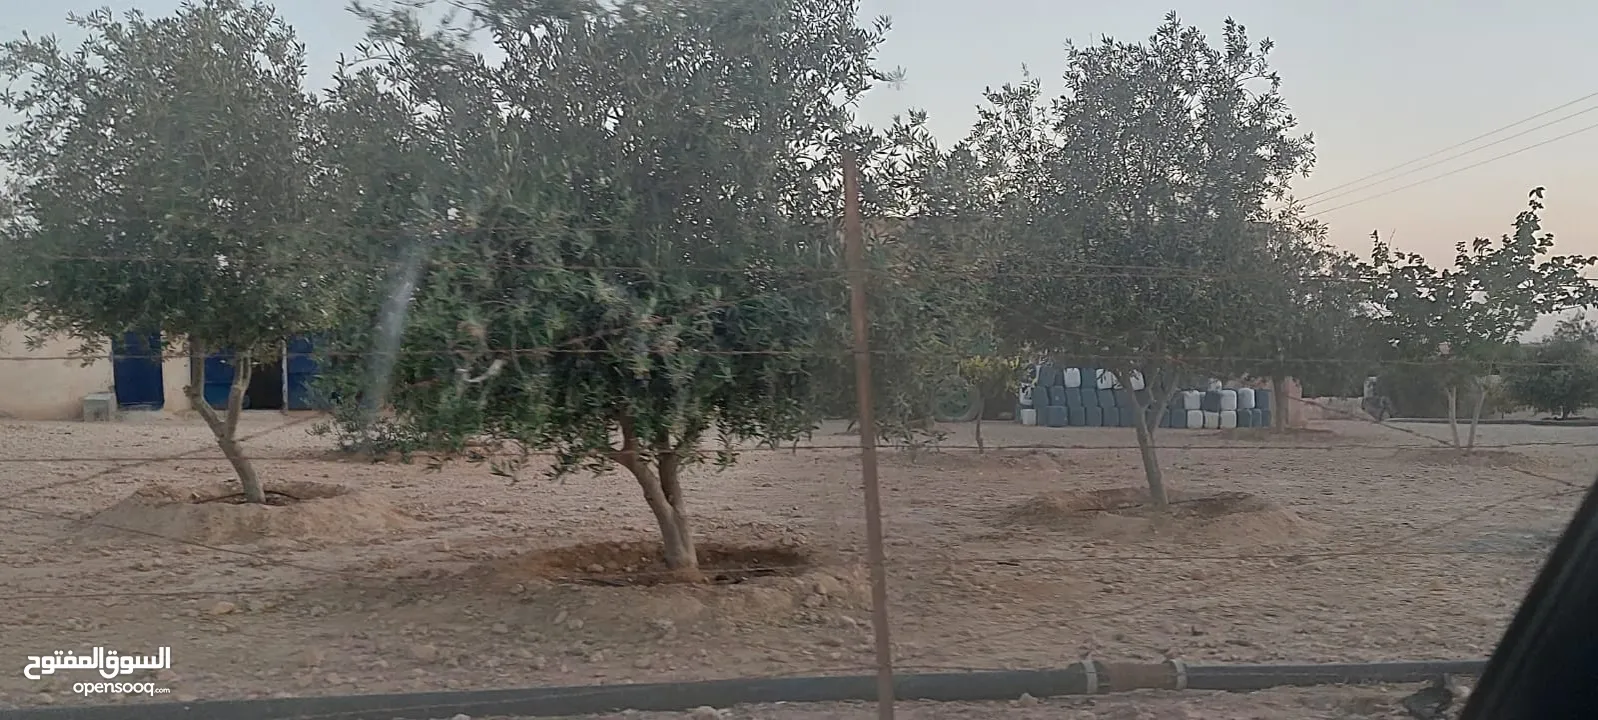 أرض للبيع في جنوب عمان خان الزبيب